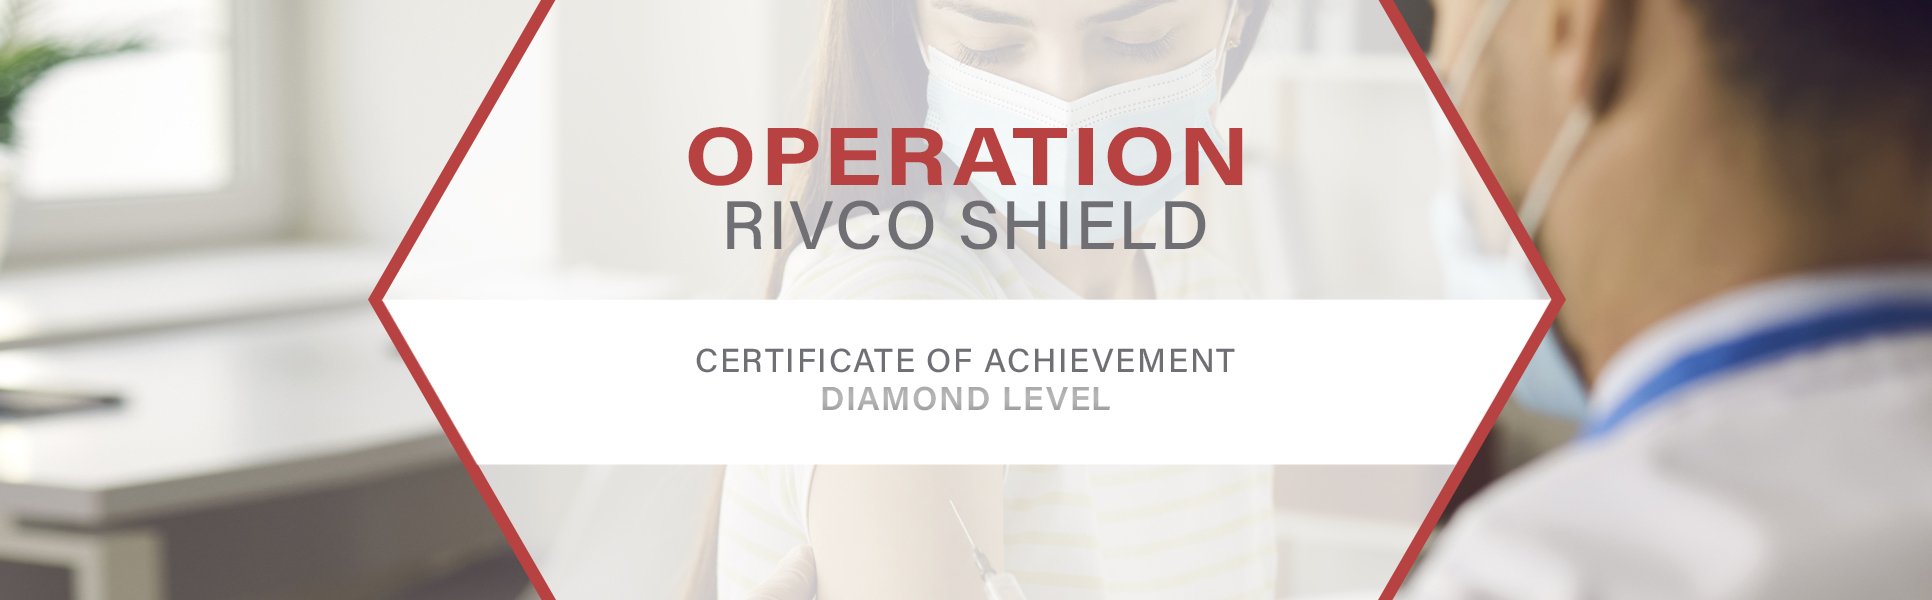 Operation Rivco Shield | Diamond Level Certificate | DOHC